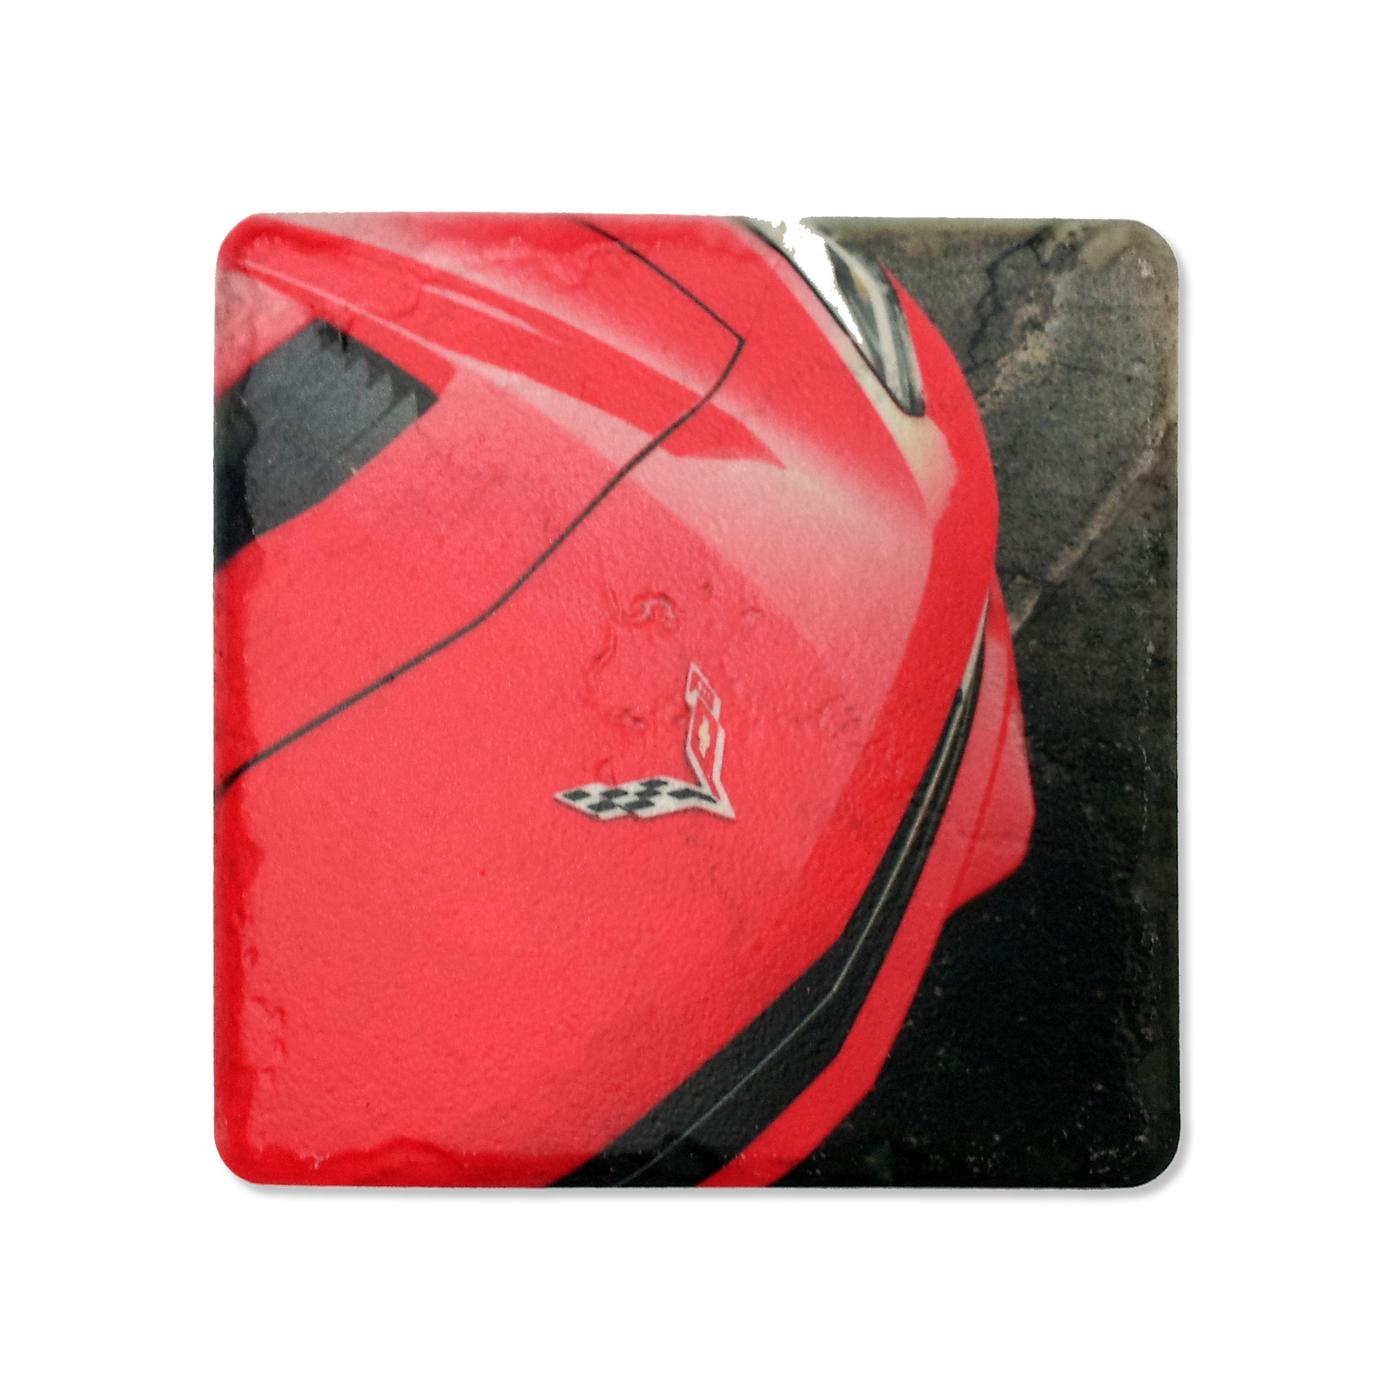 C7 Corvette Red Picture Stone Coaster